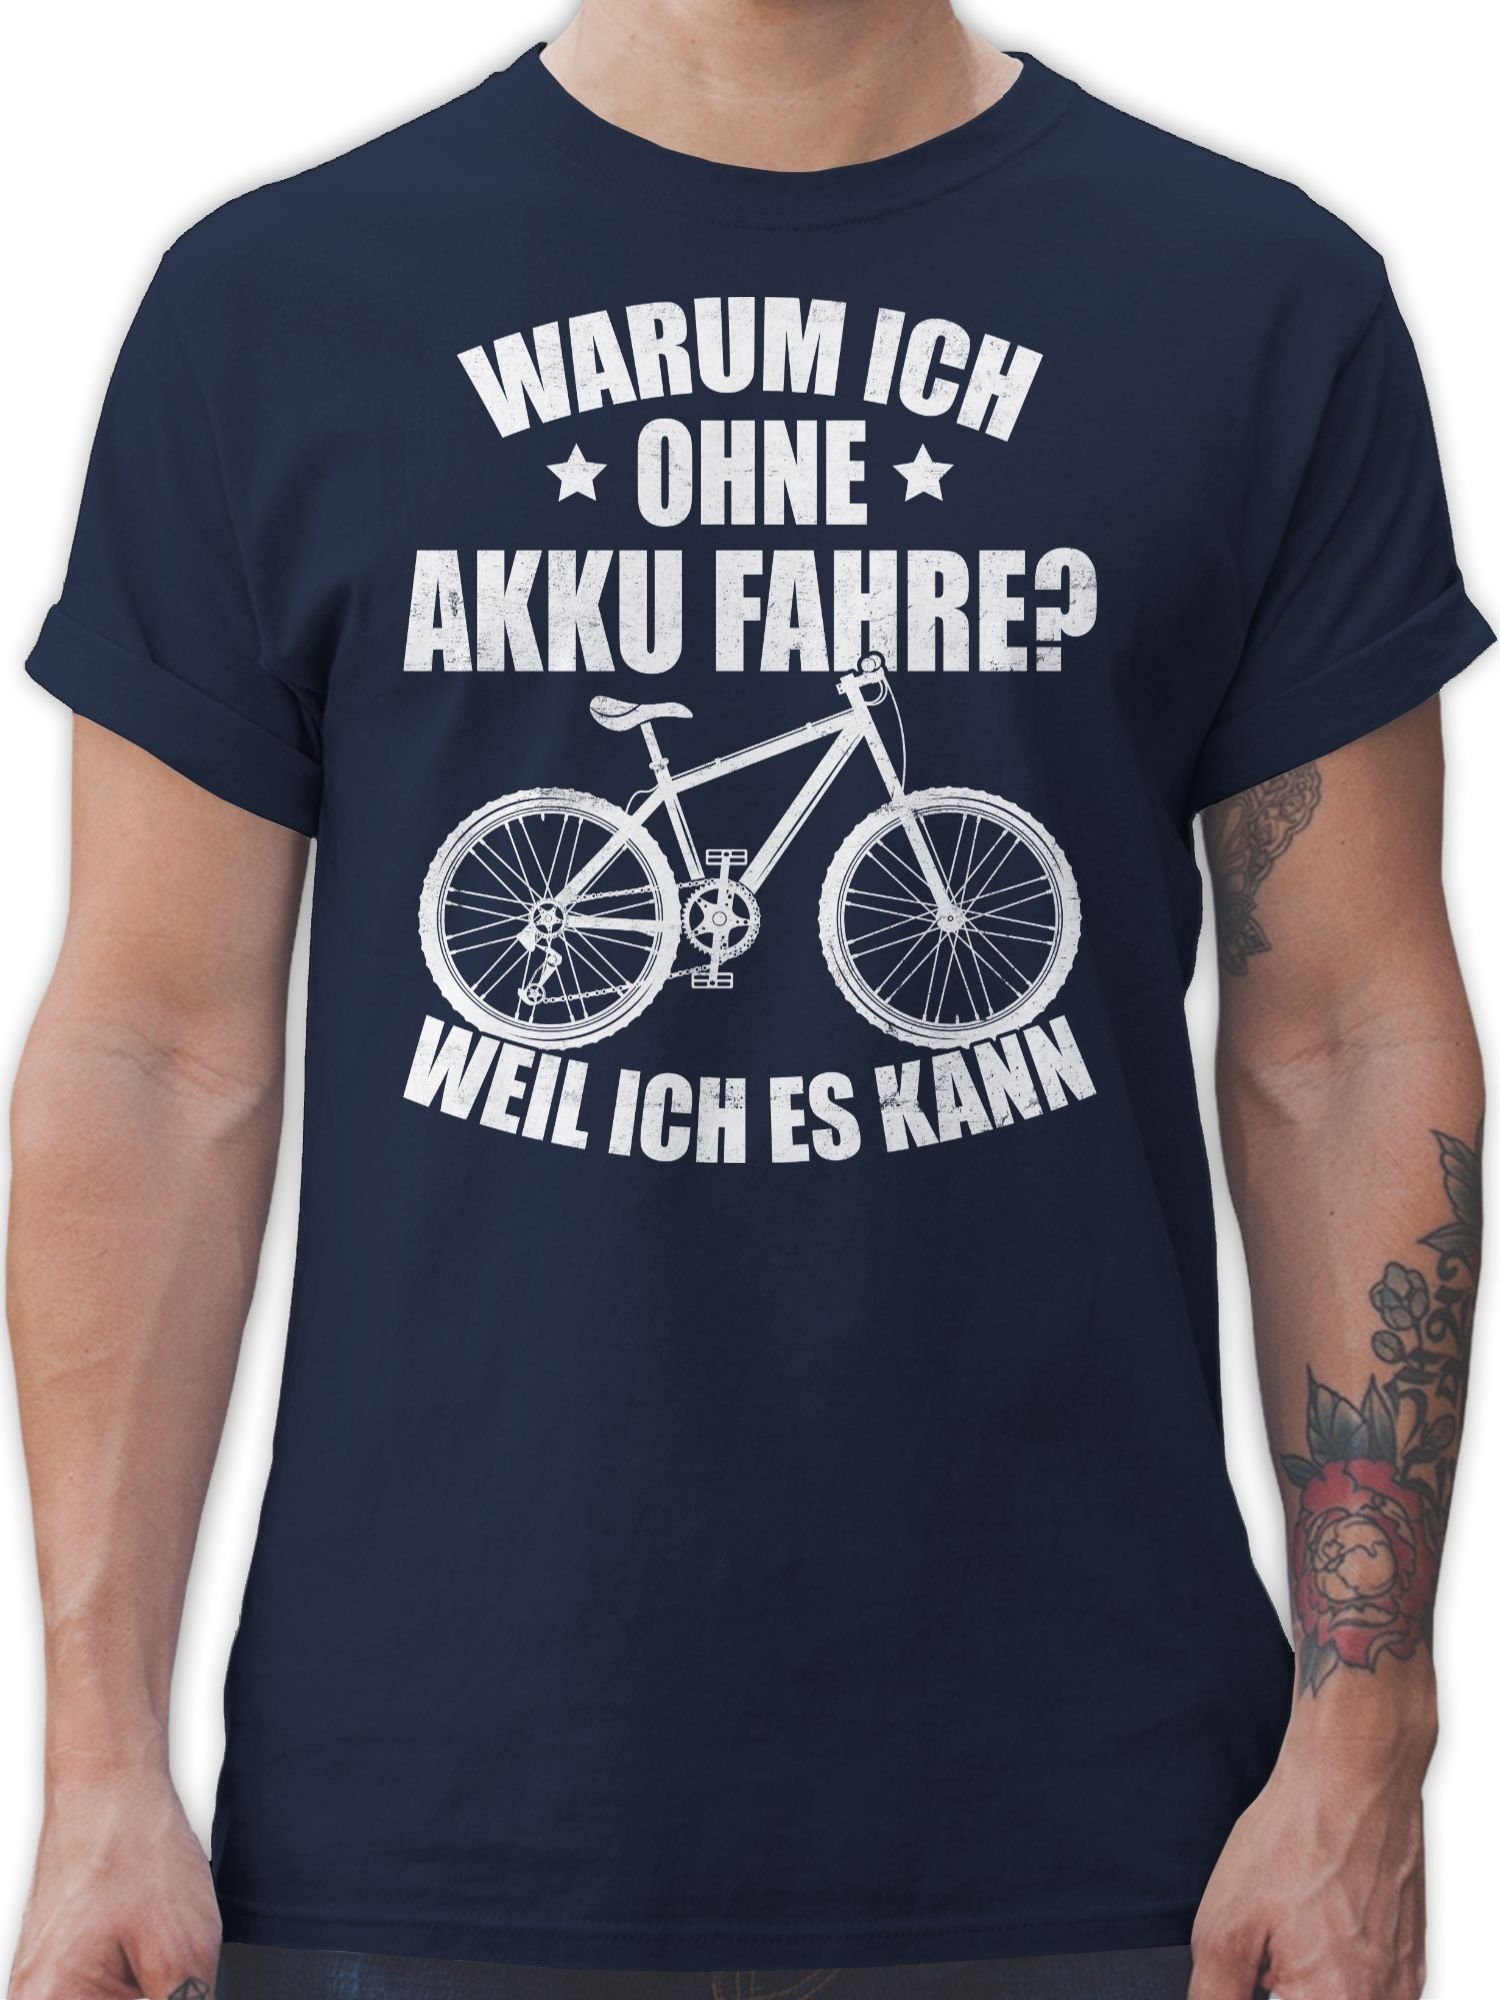 Shirtracer T-Shirt Warum ich ohne Akku fahre - weil ich es kann - weiß Fahrrad Bekleidung Radsport 02 Navy Blau | T-Shirts